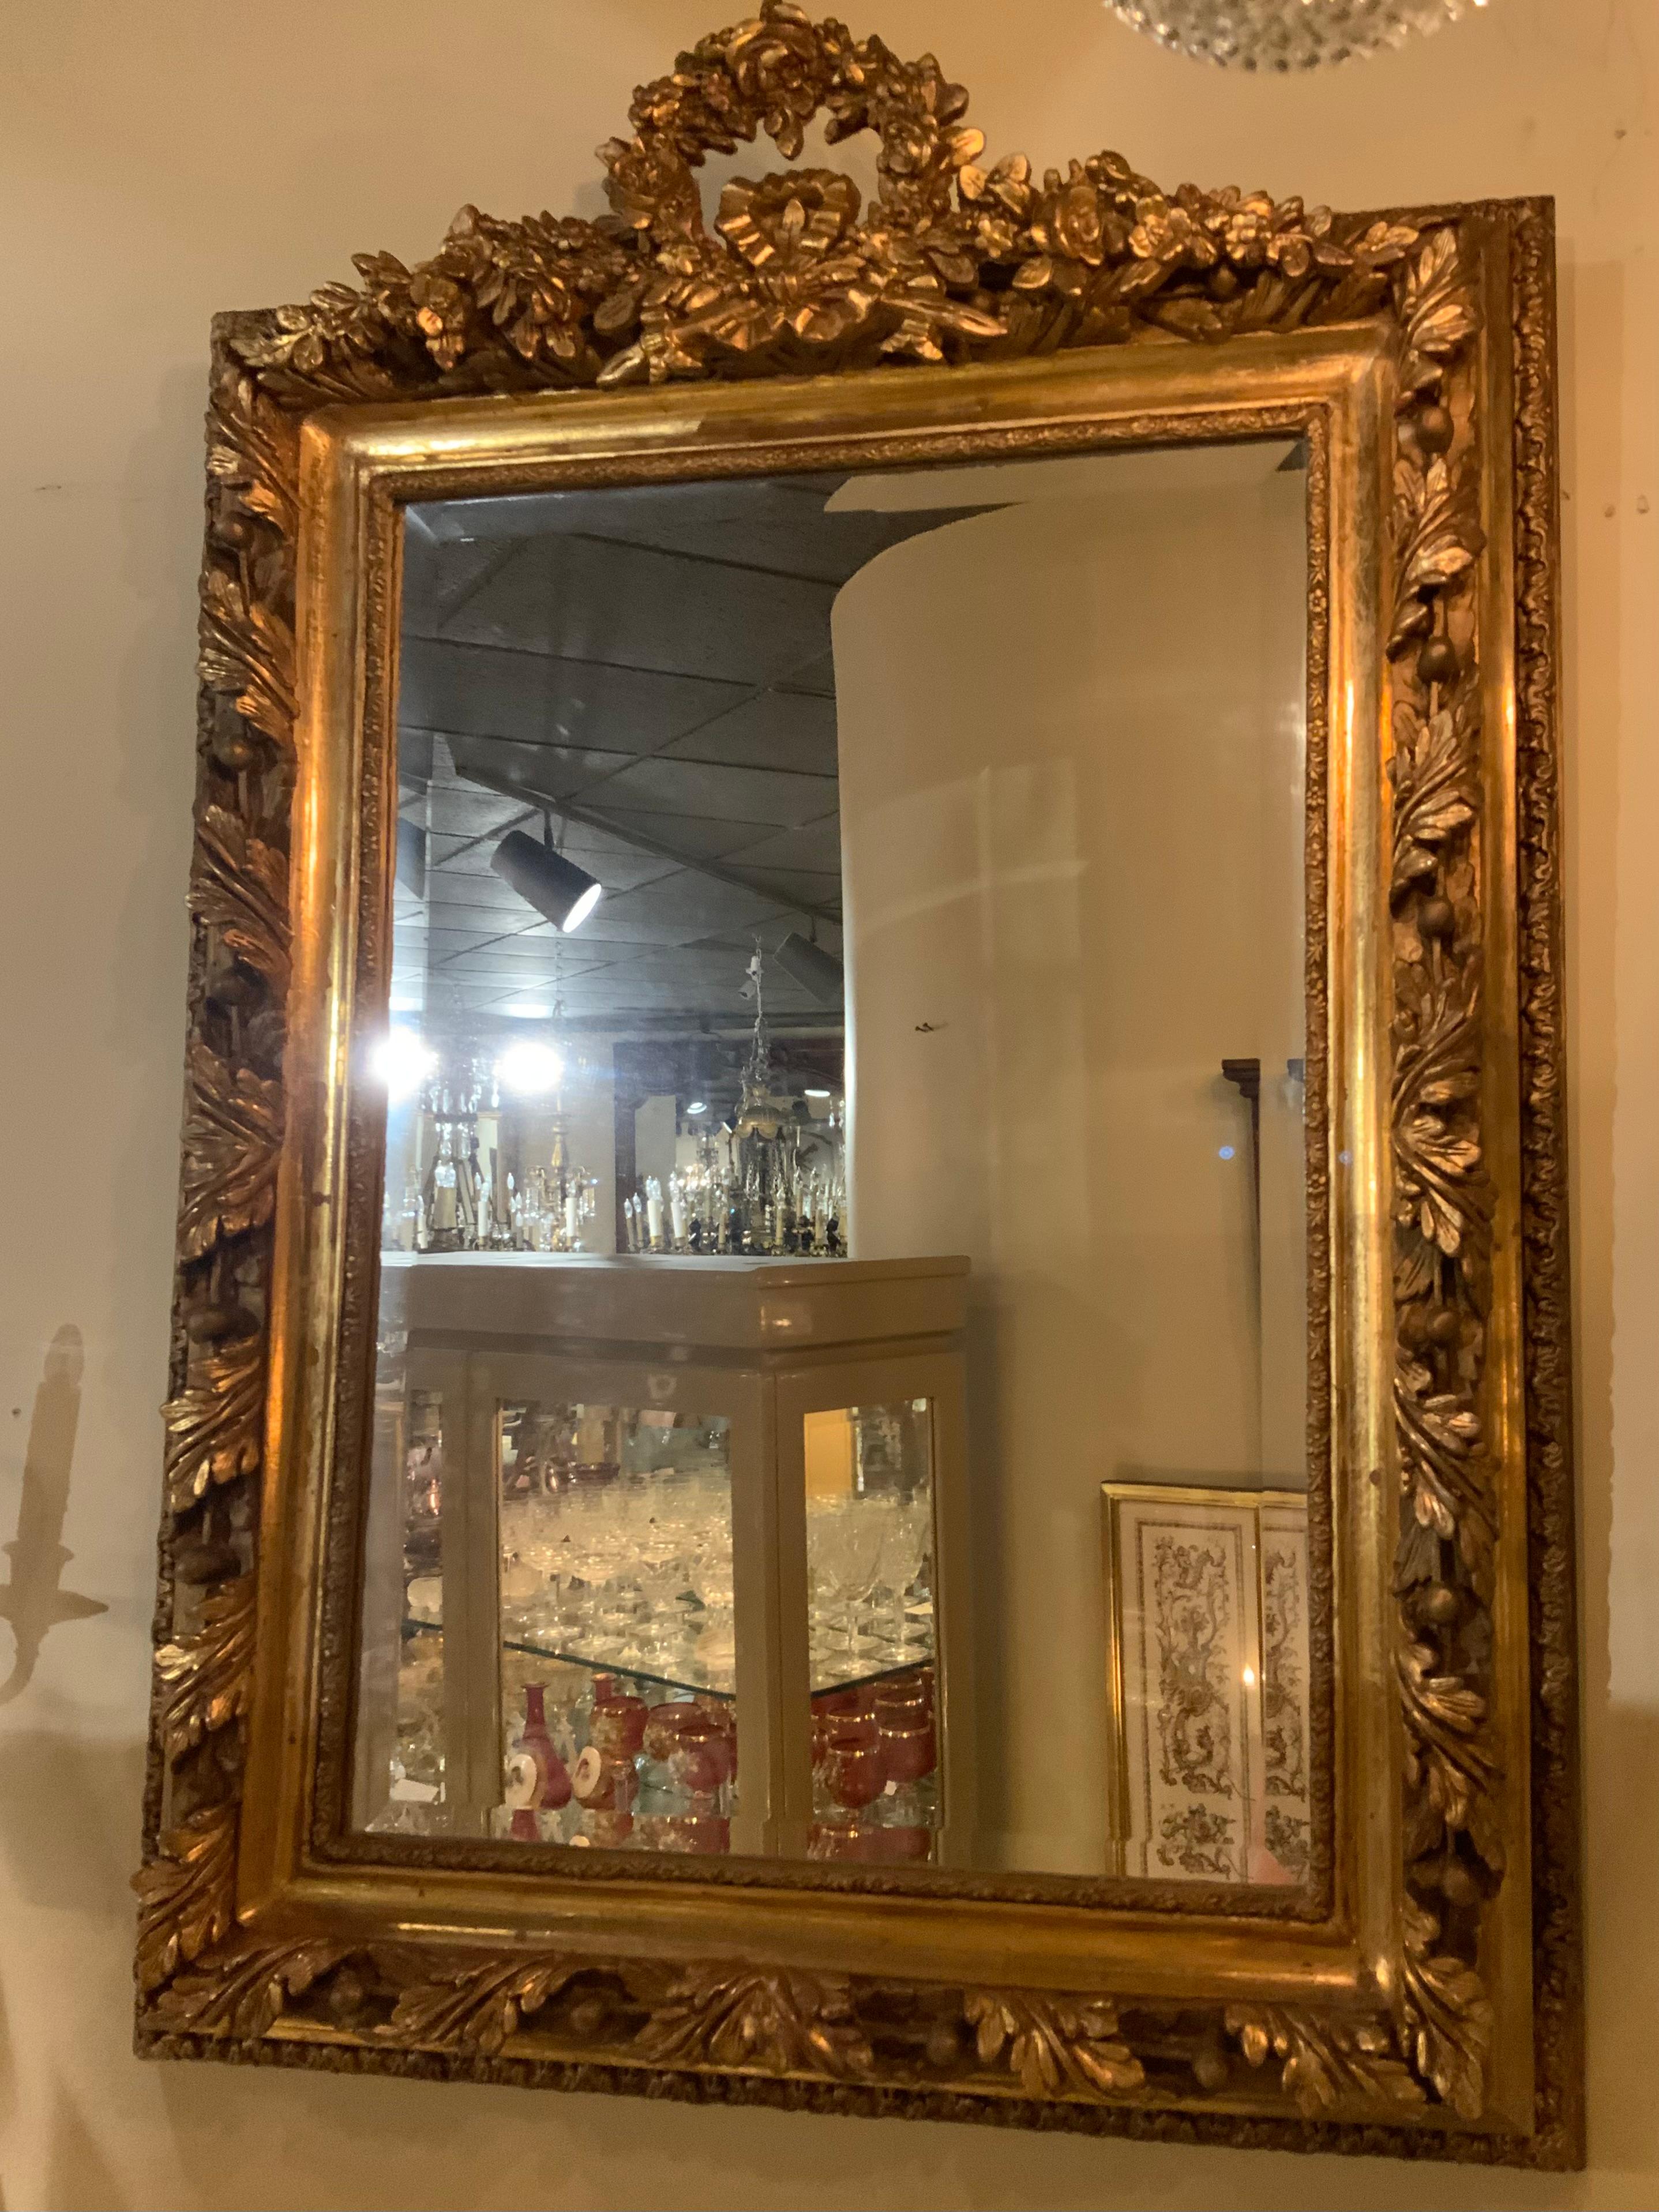 Giltwood mit Blumenkranzform  Wappen mit Blumenspritzern und einem
Zentrale Schleife nicht, der äußere Rahmen tief geformt mit
Mit Blatt- und Eichelmotiven und einem Spiegel aus abgeschrägtem Glas.